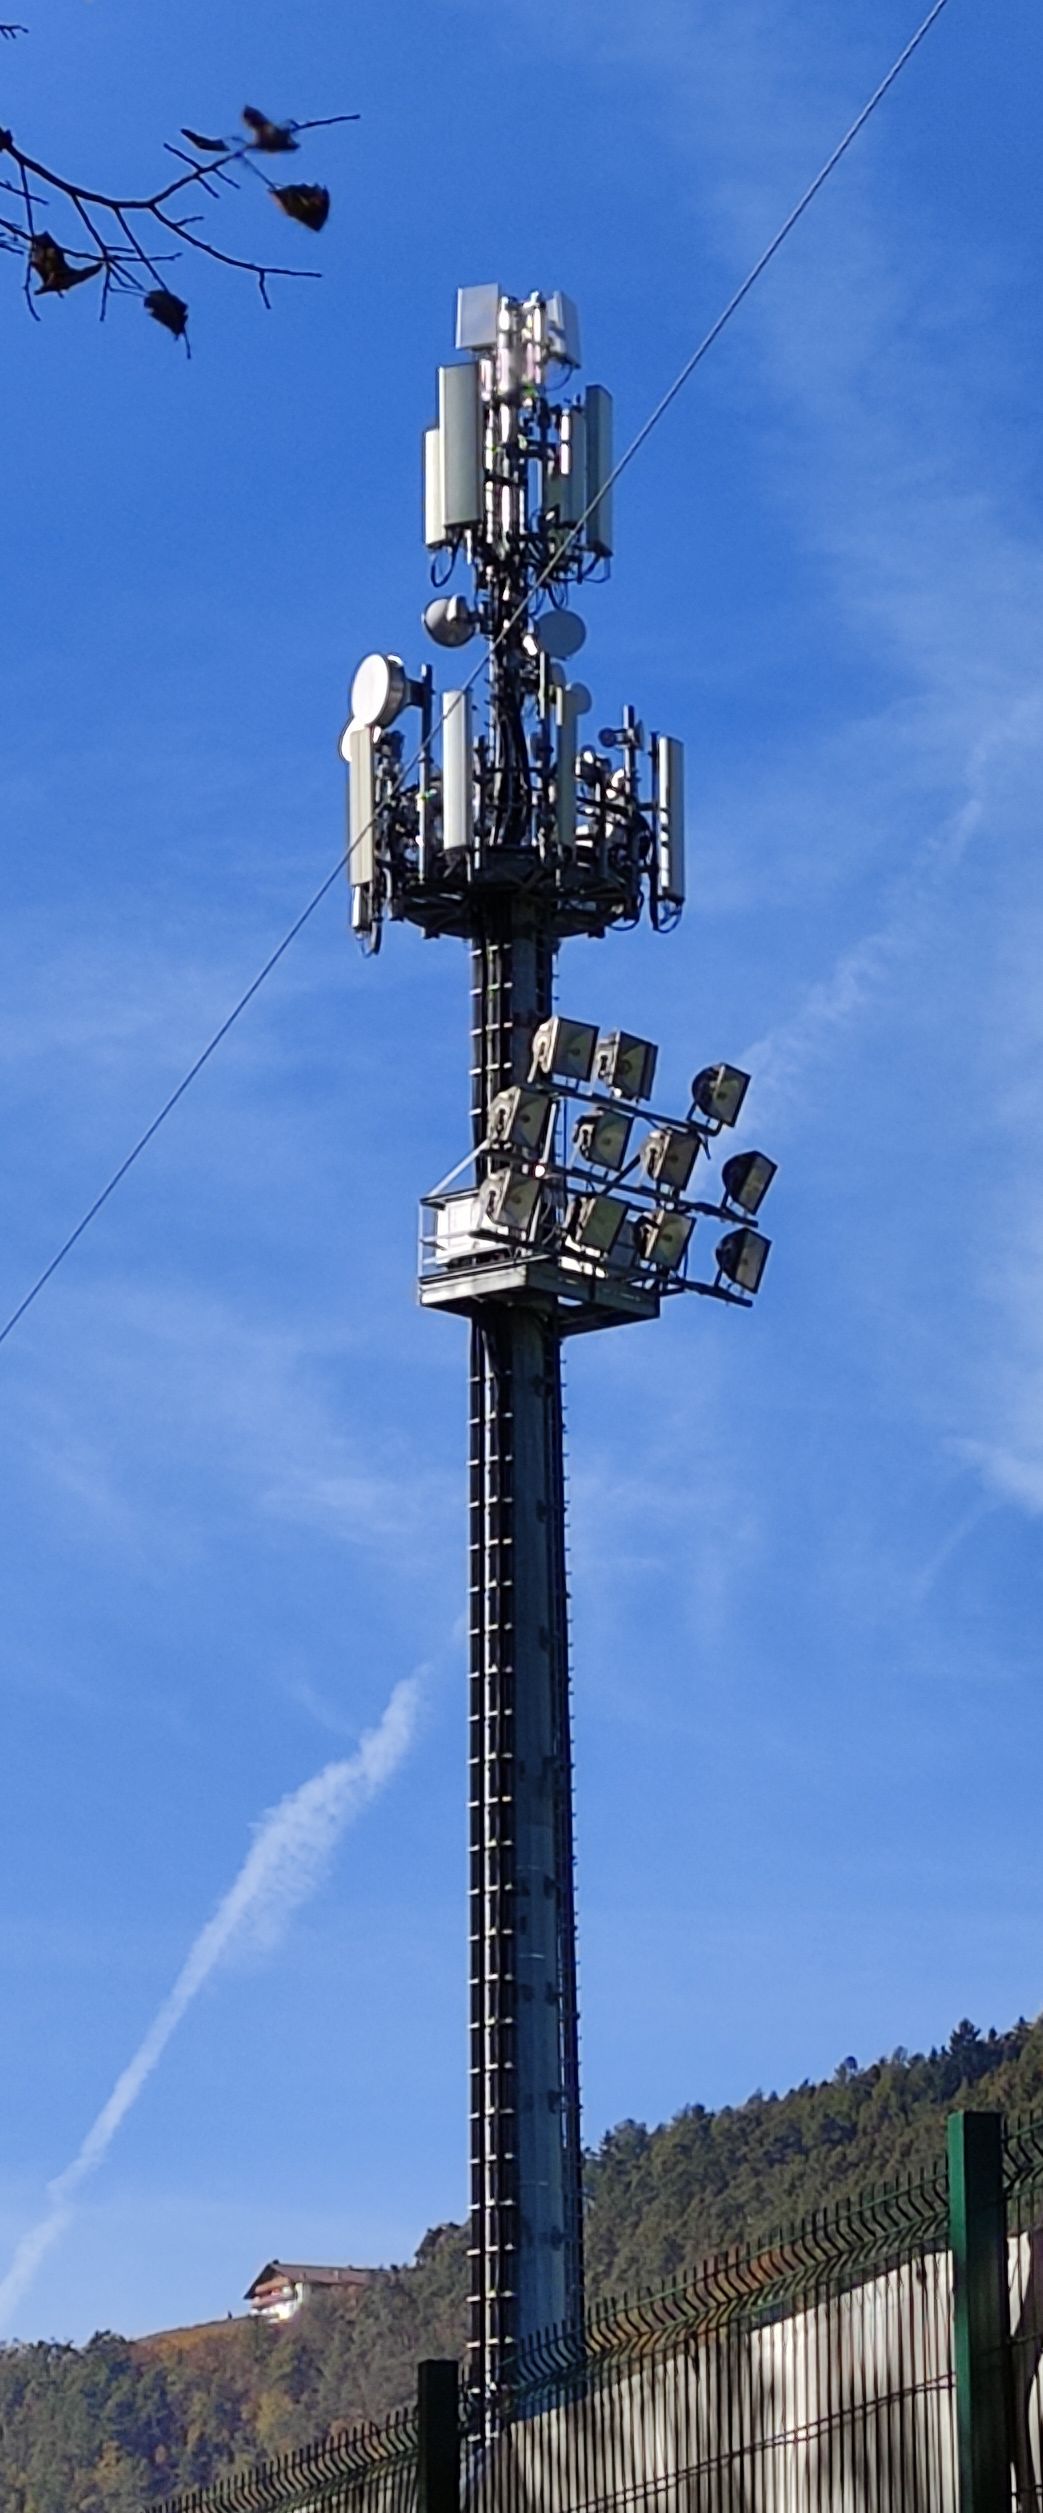 Die Antennen im Oktober 2021. Wind3 hat die 5G-Antennen installiert. Foto von Stefan R.